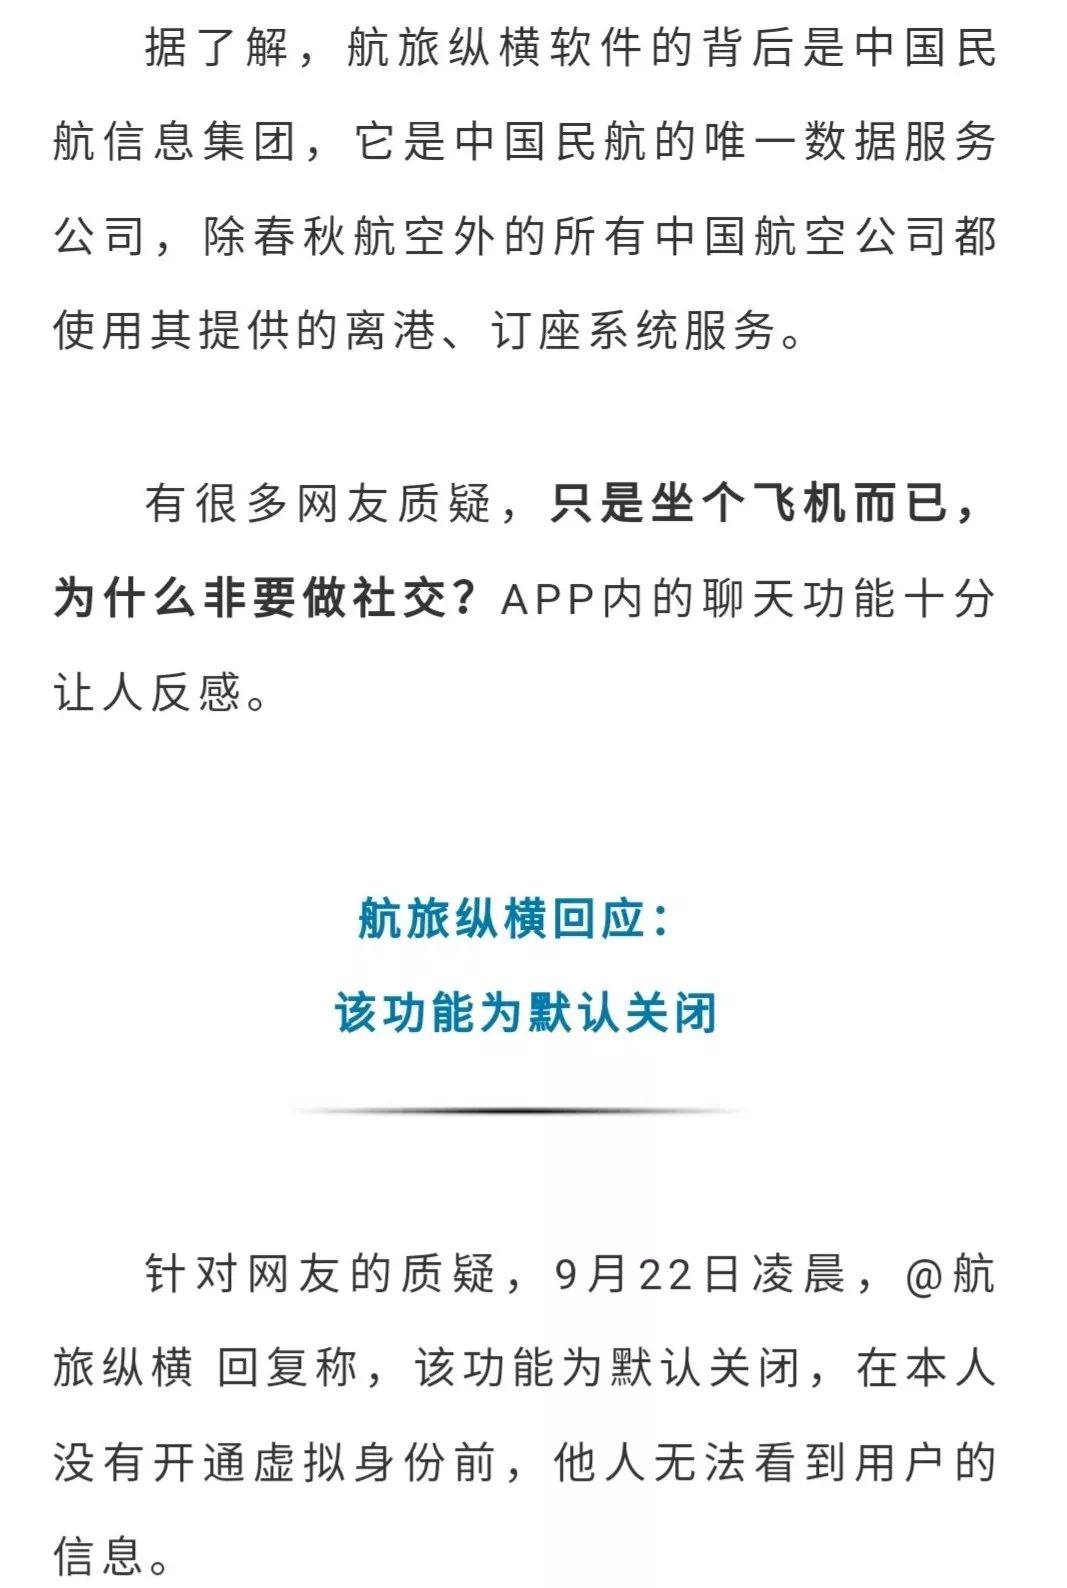 飞机app下载中文版怎么下载,飞机app下载中文版怎么下载的